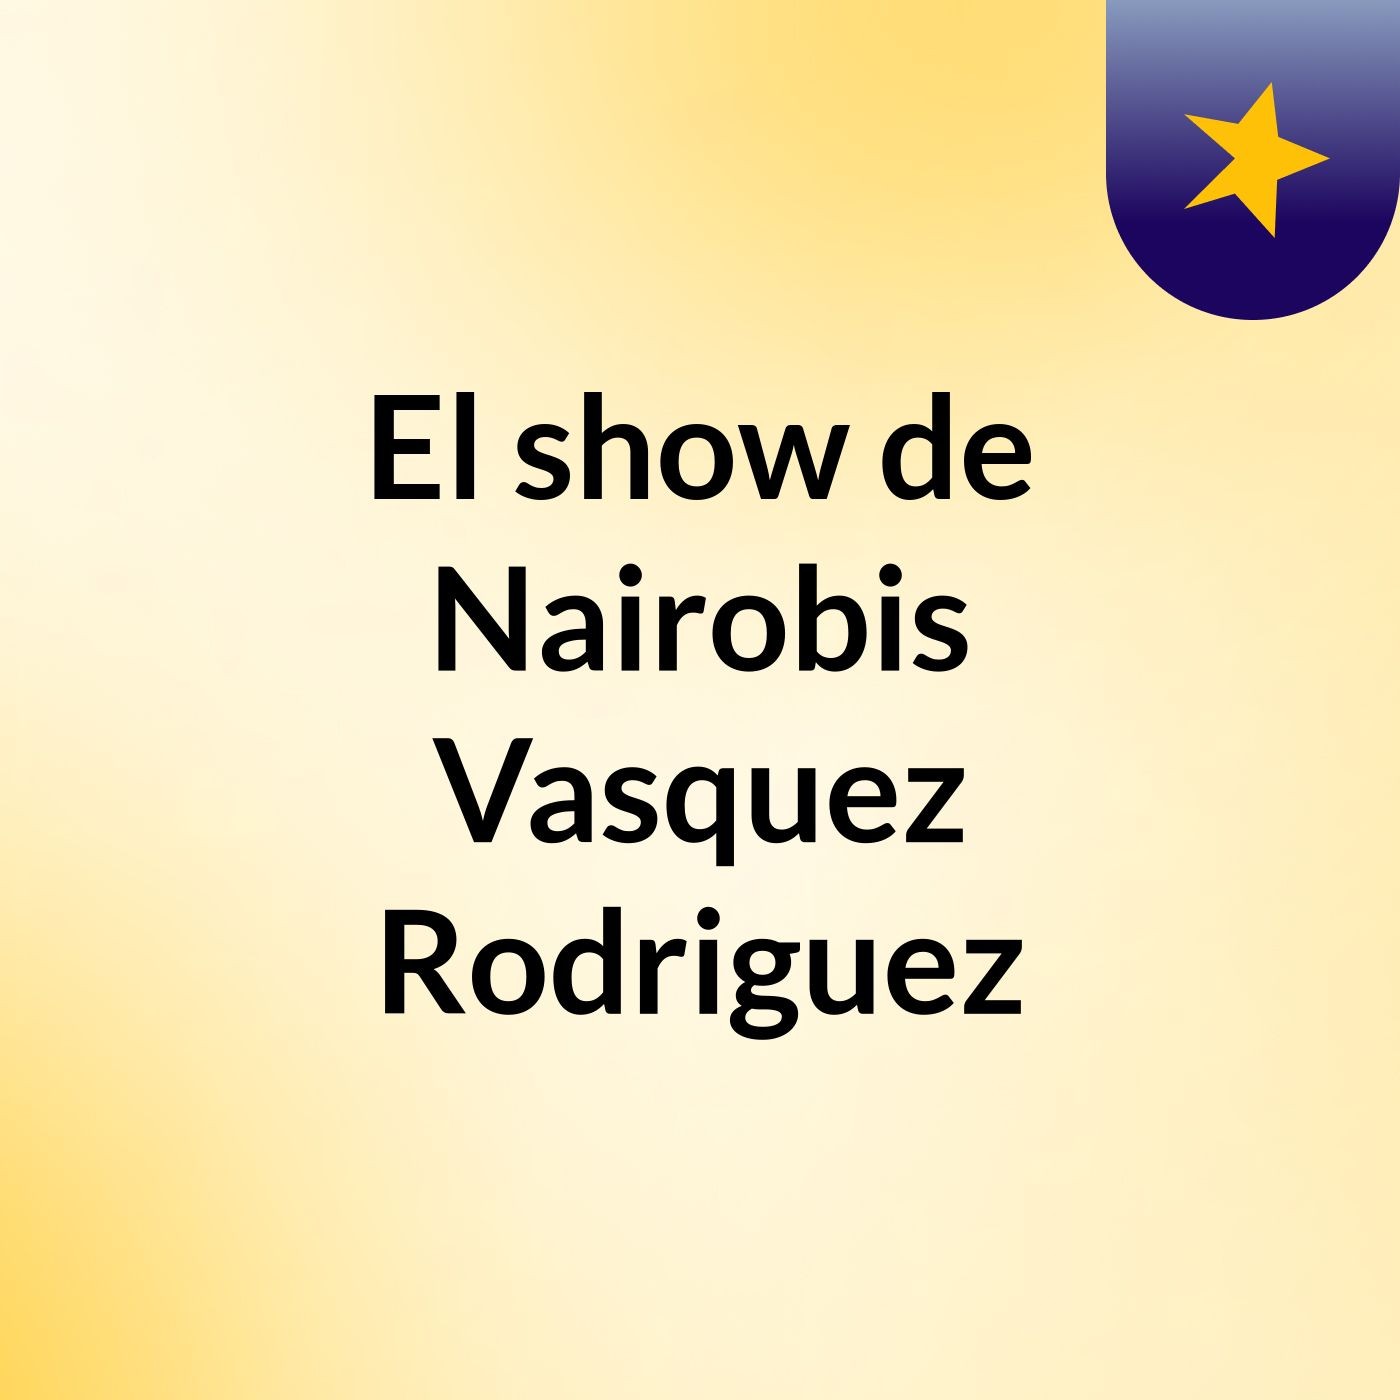 El show de Nairobis Vasquez Rodriguez